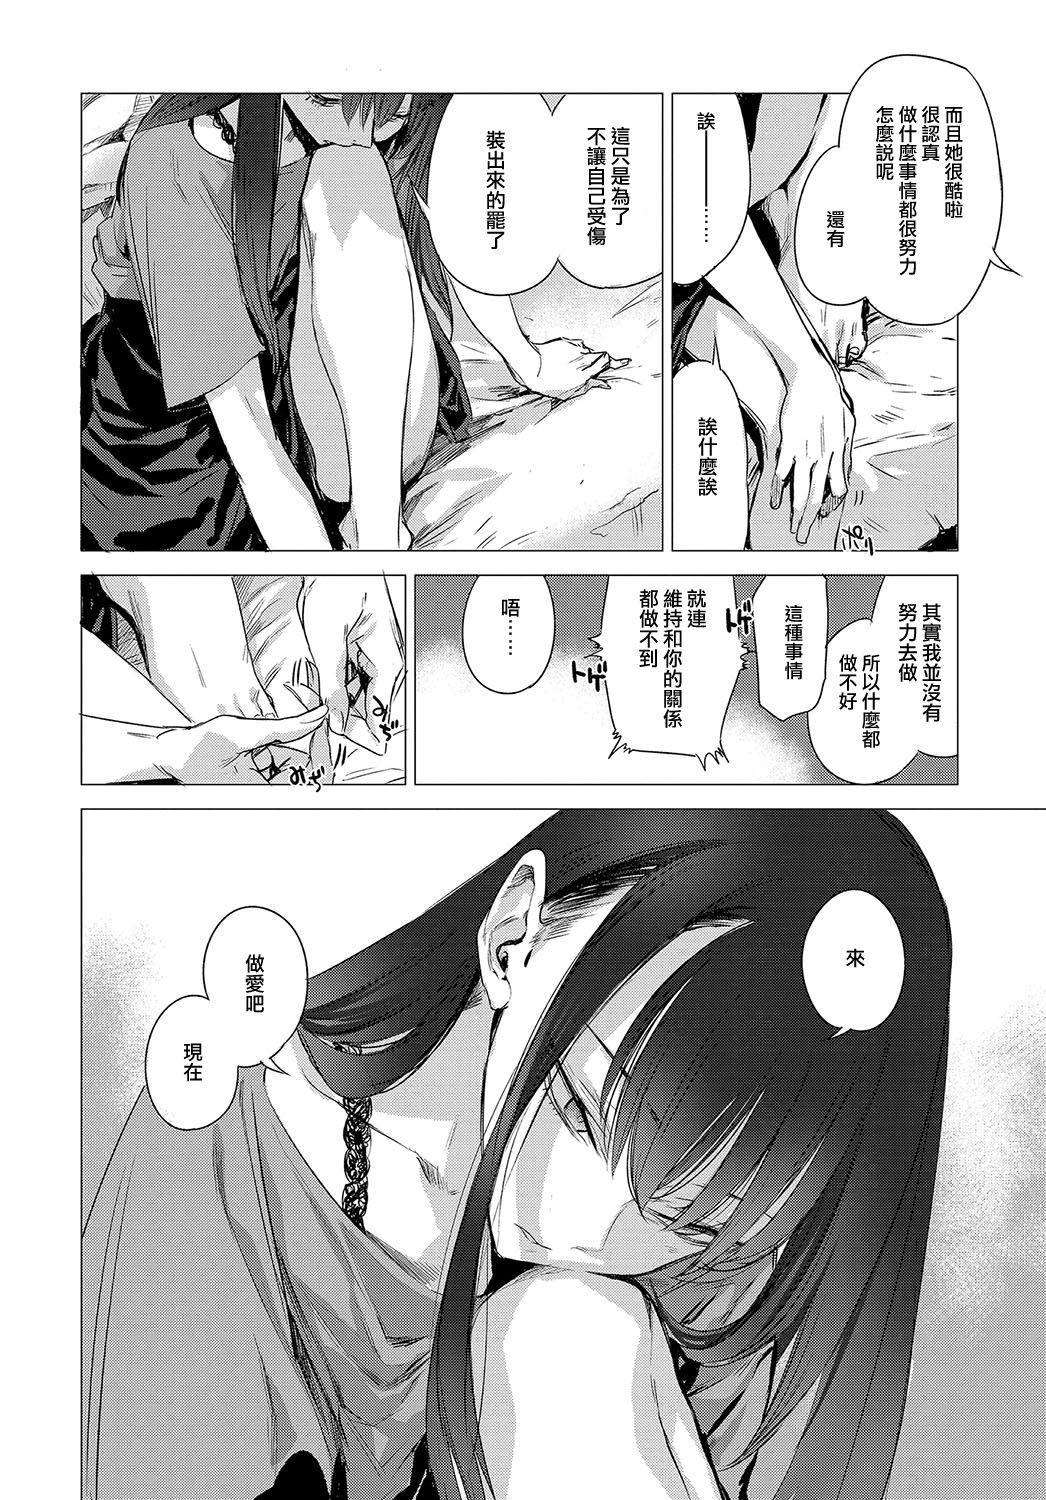 Bro Kanojo no Himitsu II - The Secret of Her Masturbando - Page 4